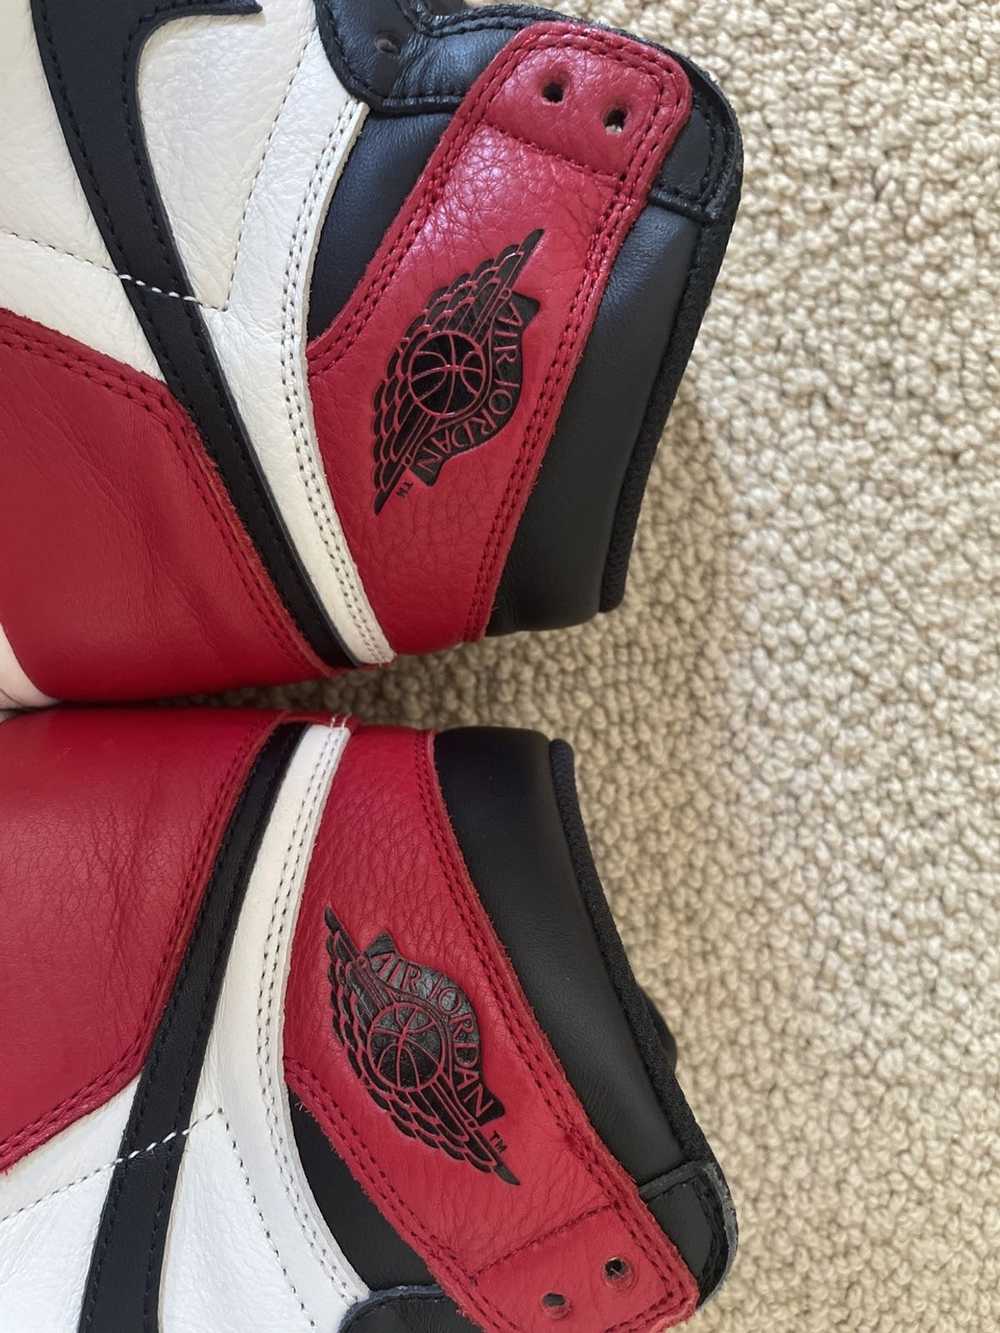 Jordan Brand × Nike Jordan 1 High Bred Toe 2018 - image 8